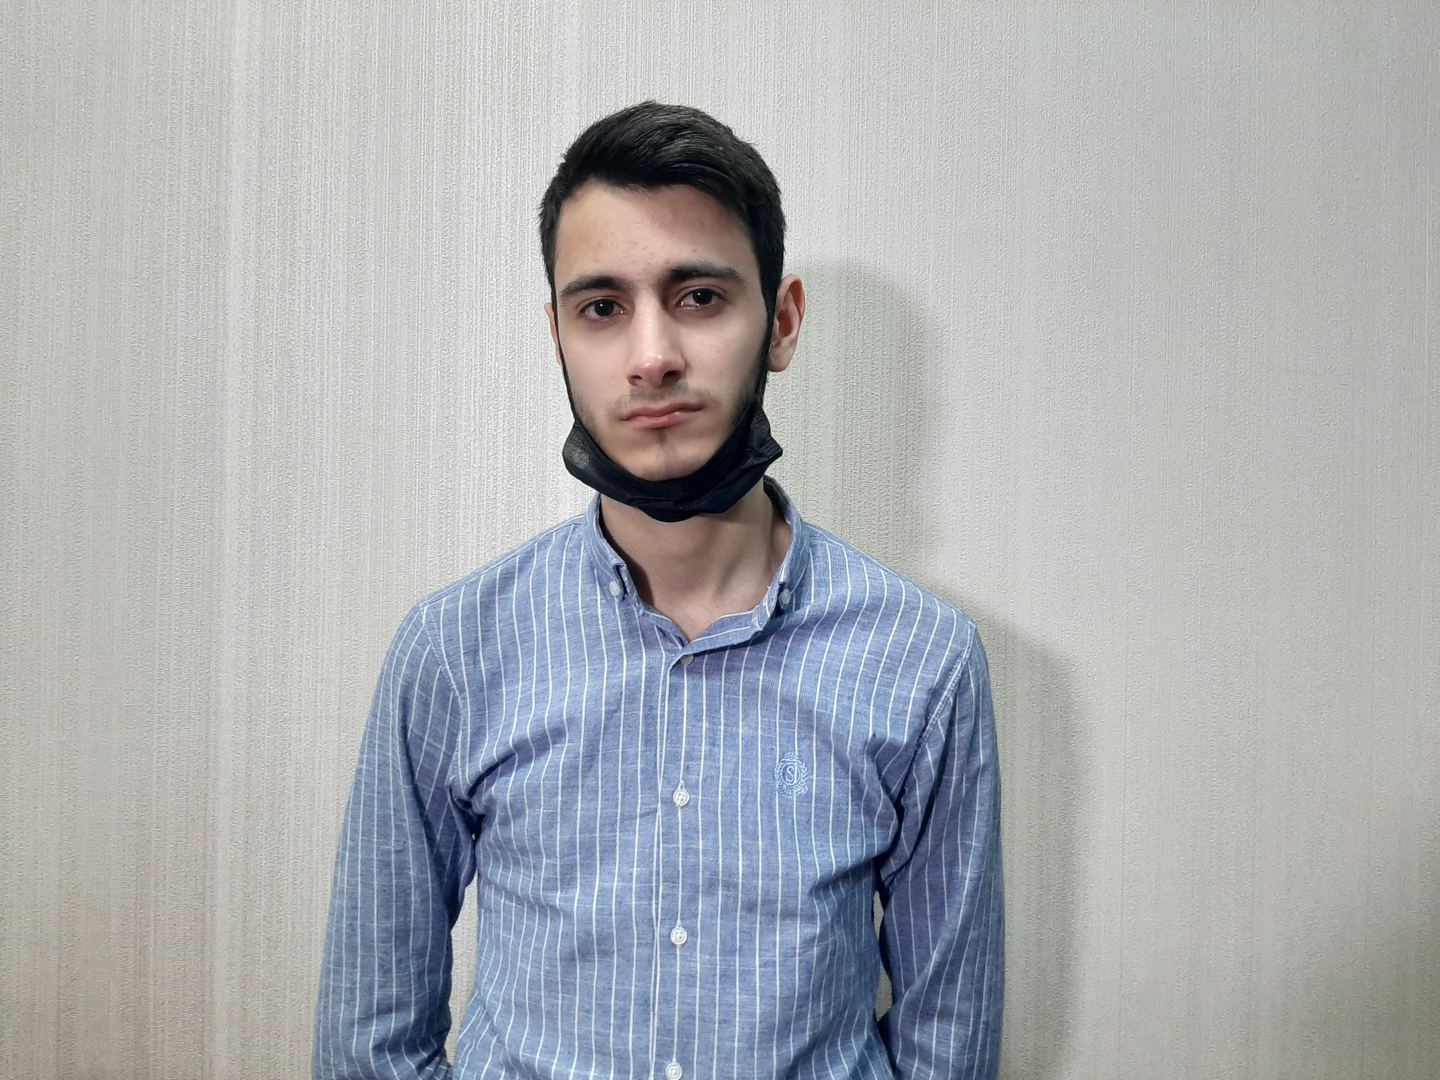 МВД Азербайджана: Арестовано лицо, подделывавшее SMS-разрешения (ВИДЕО)